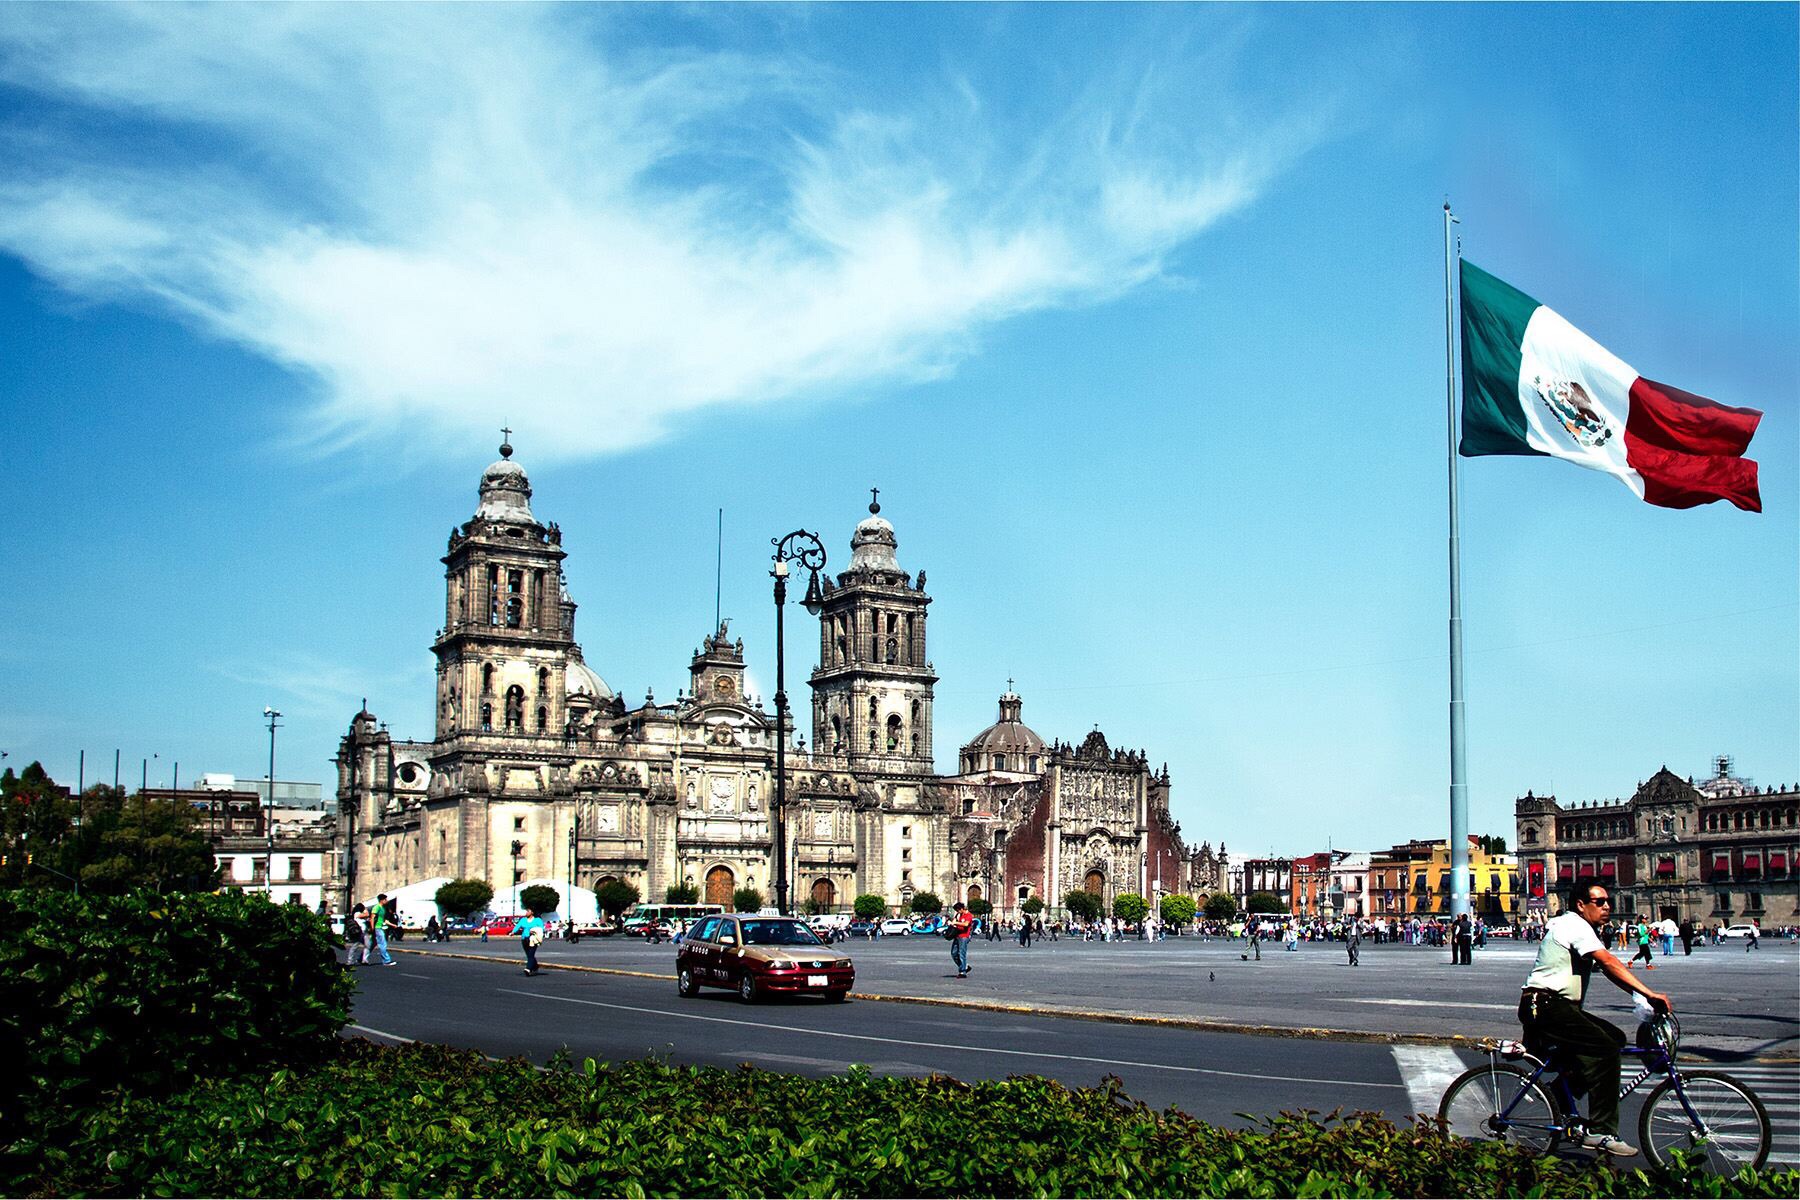 墨西哥风景希望大家喜欢_英雄联盟|游民星空